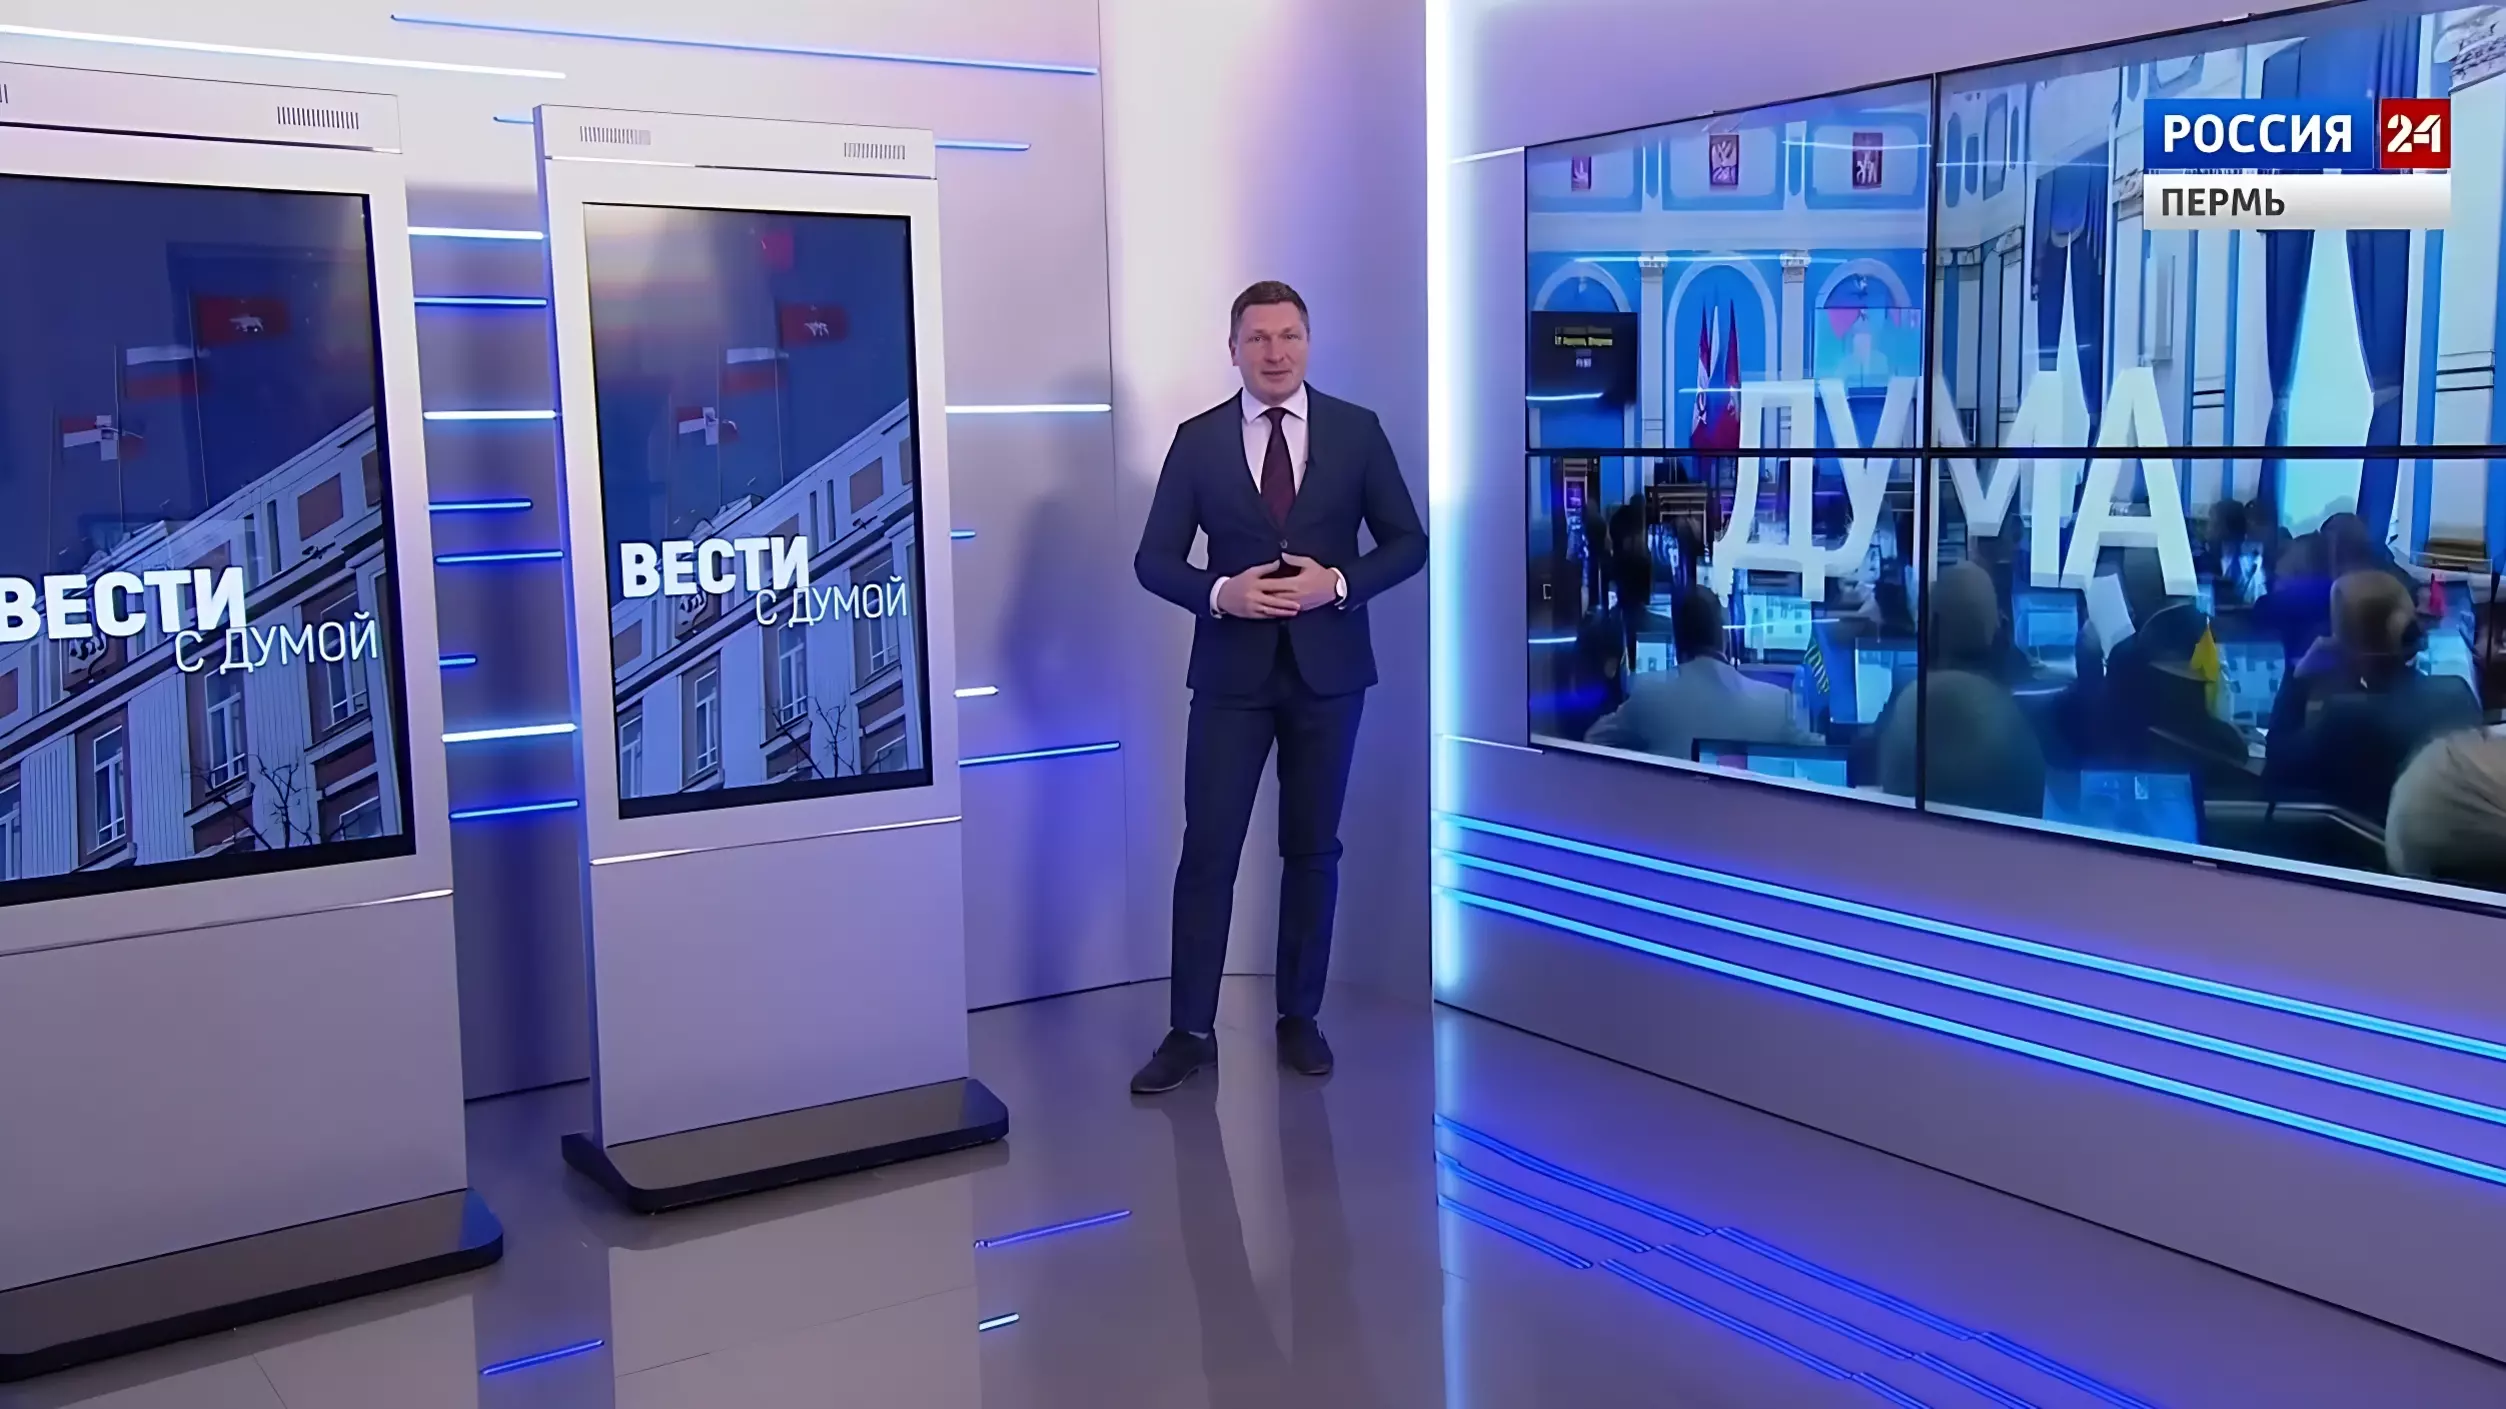 Крупнейший видеохостинг планеты заблокировал канал «Вести Пермь»